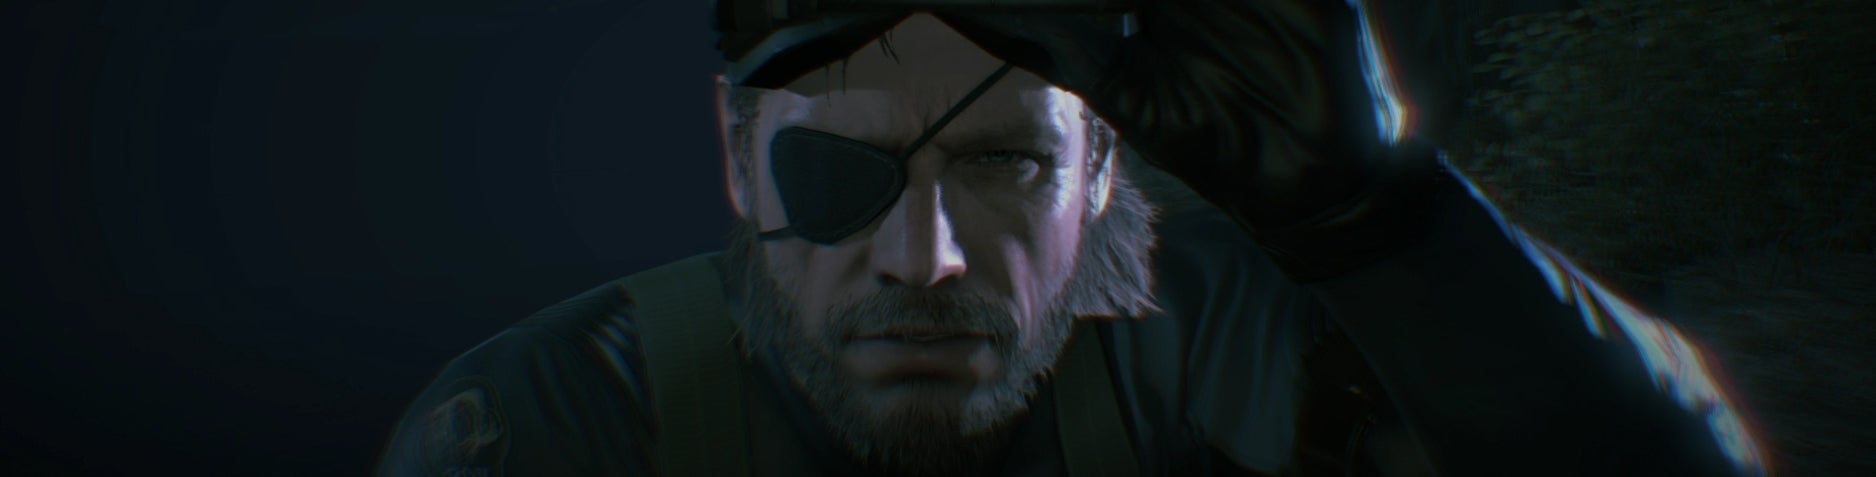 Bilder zu Eg.de Frühstart - Metal Gear Solid 5: Ground Zeroes, Minecraft, Republique